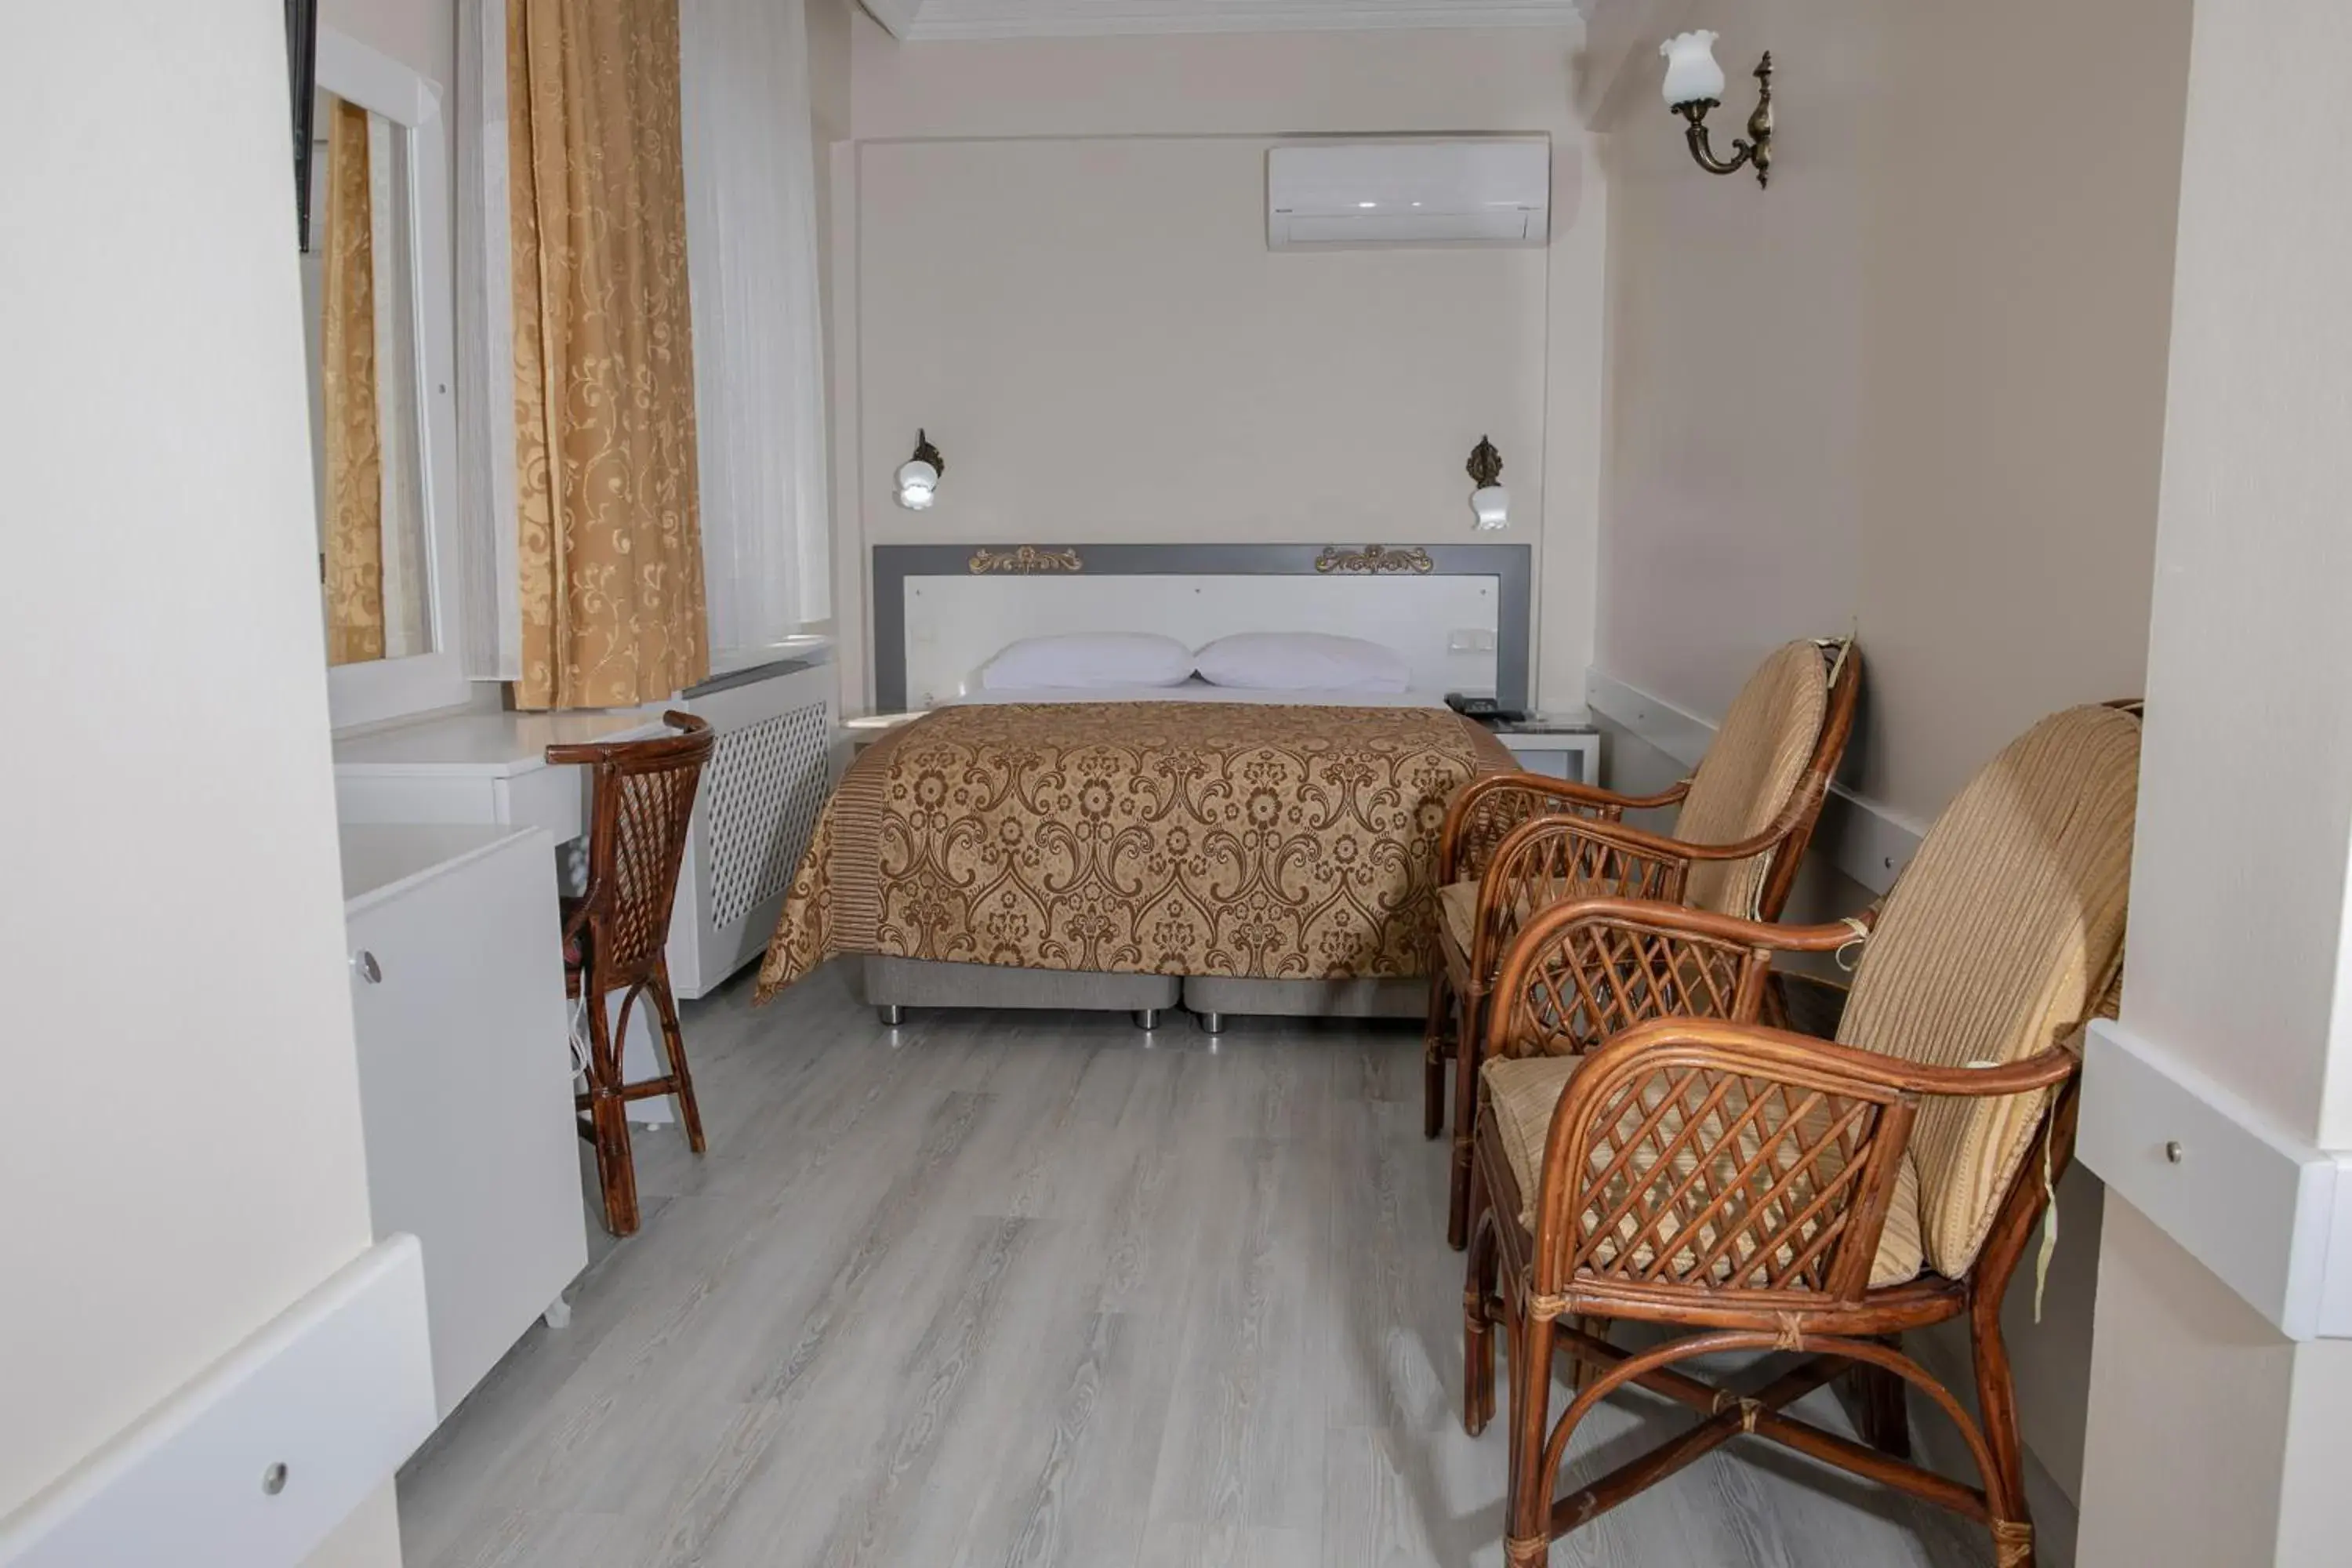 Bed in Hali Hotel